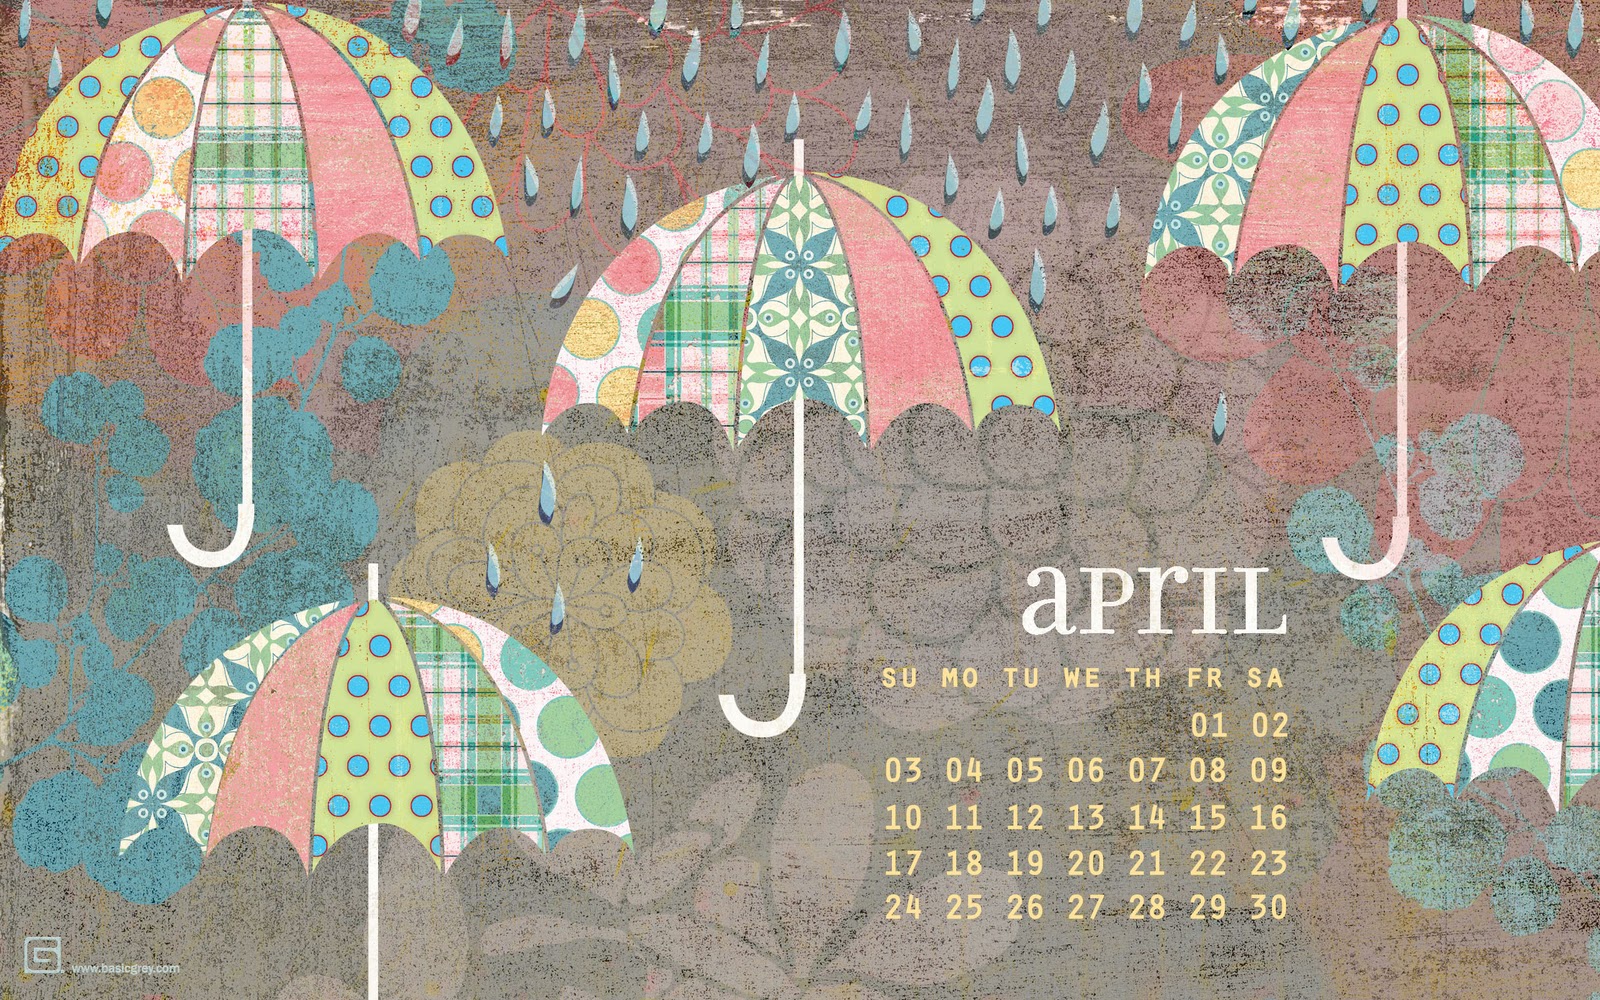 Impress Moment April Desktop Calendar Wallpaper